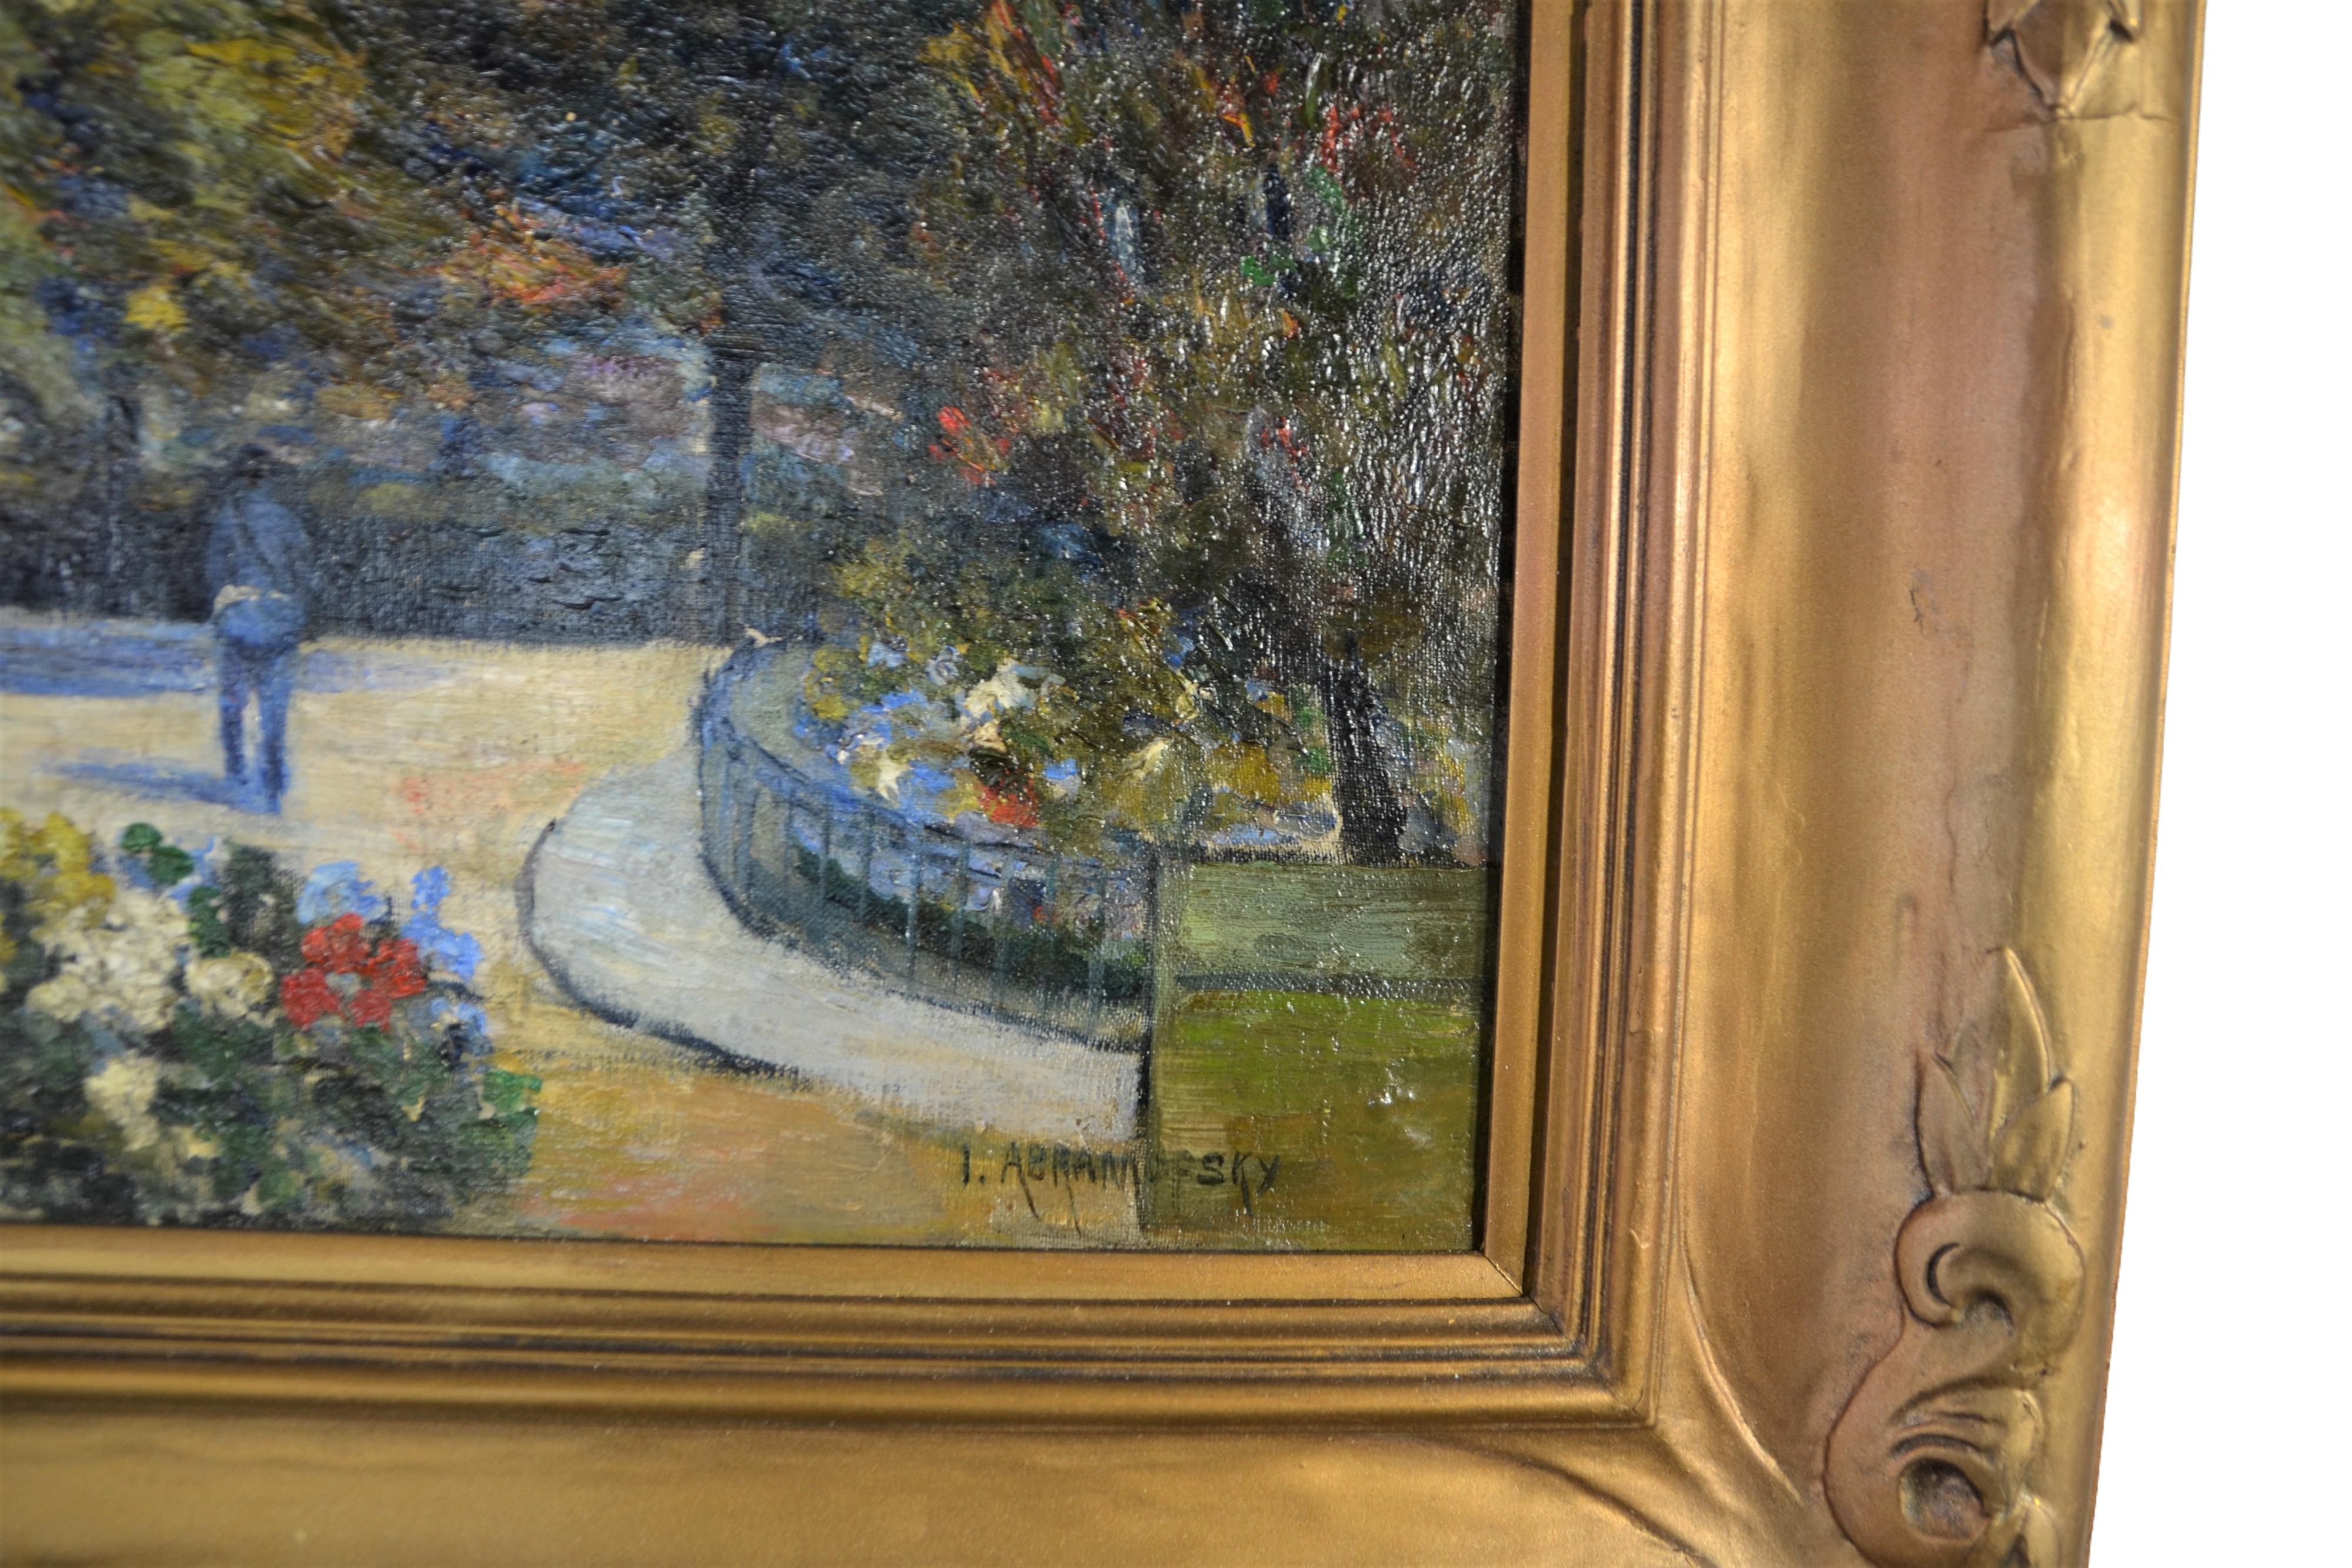 Schönes impressionistisches Gemälde eines Blumengartens und eines Weges. 
Ölgemälde auf Leinwand in seinem ursprünglichen Rahmen. Signiert vom Künstler. 
Israel Abramofsky (10. September 1888 - 16. Januar 1975) war ein in Russland geborener